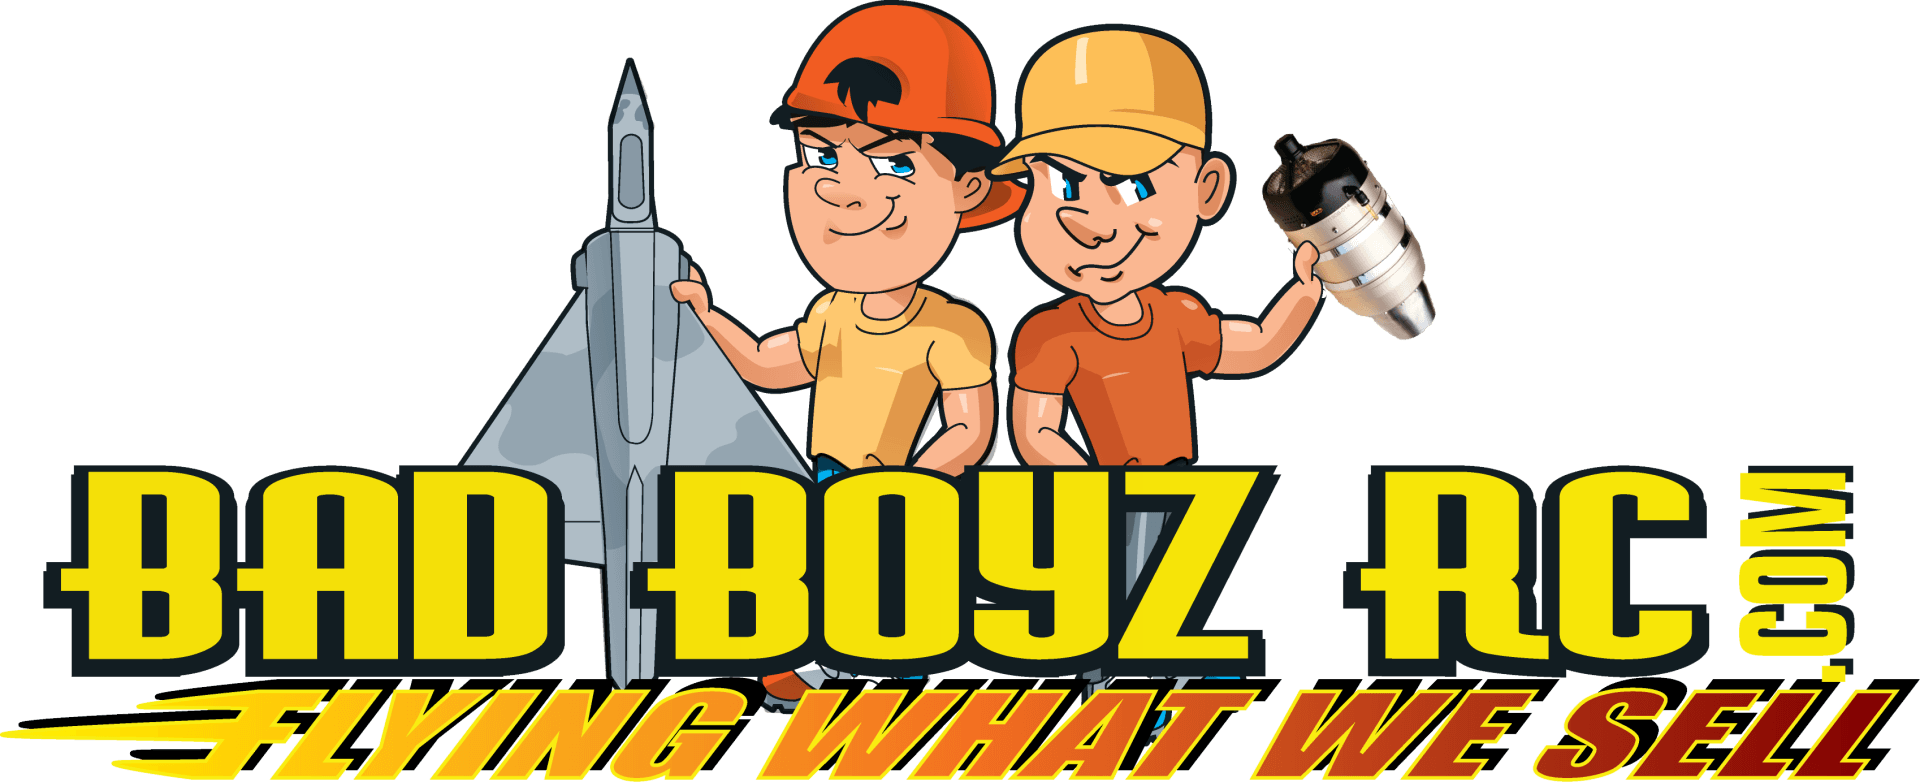 Bad boyz RC turbojet engine experts logo